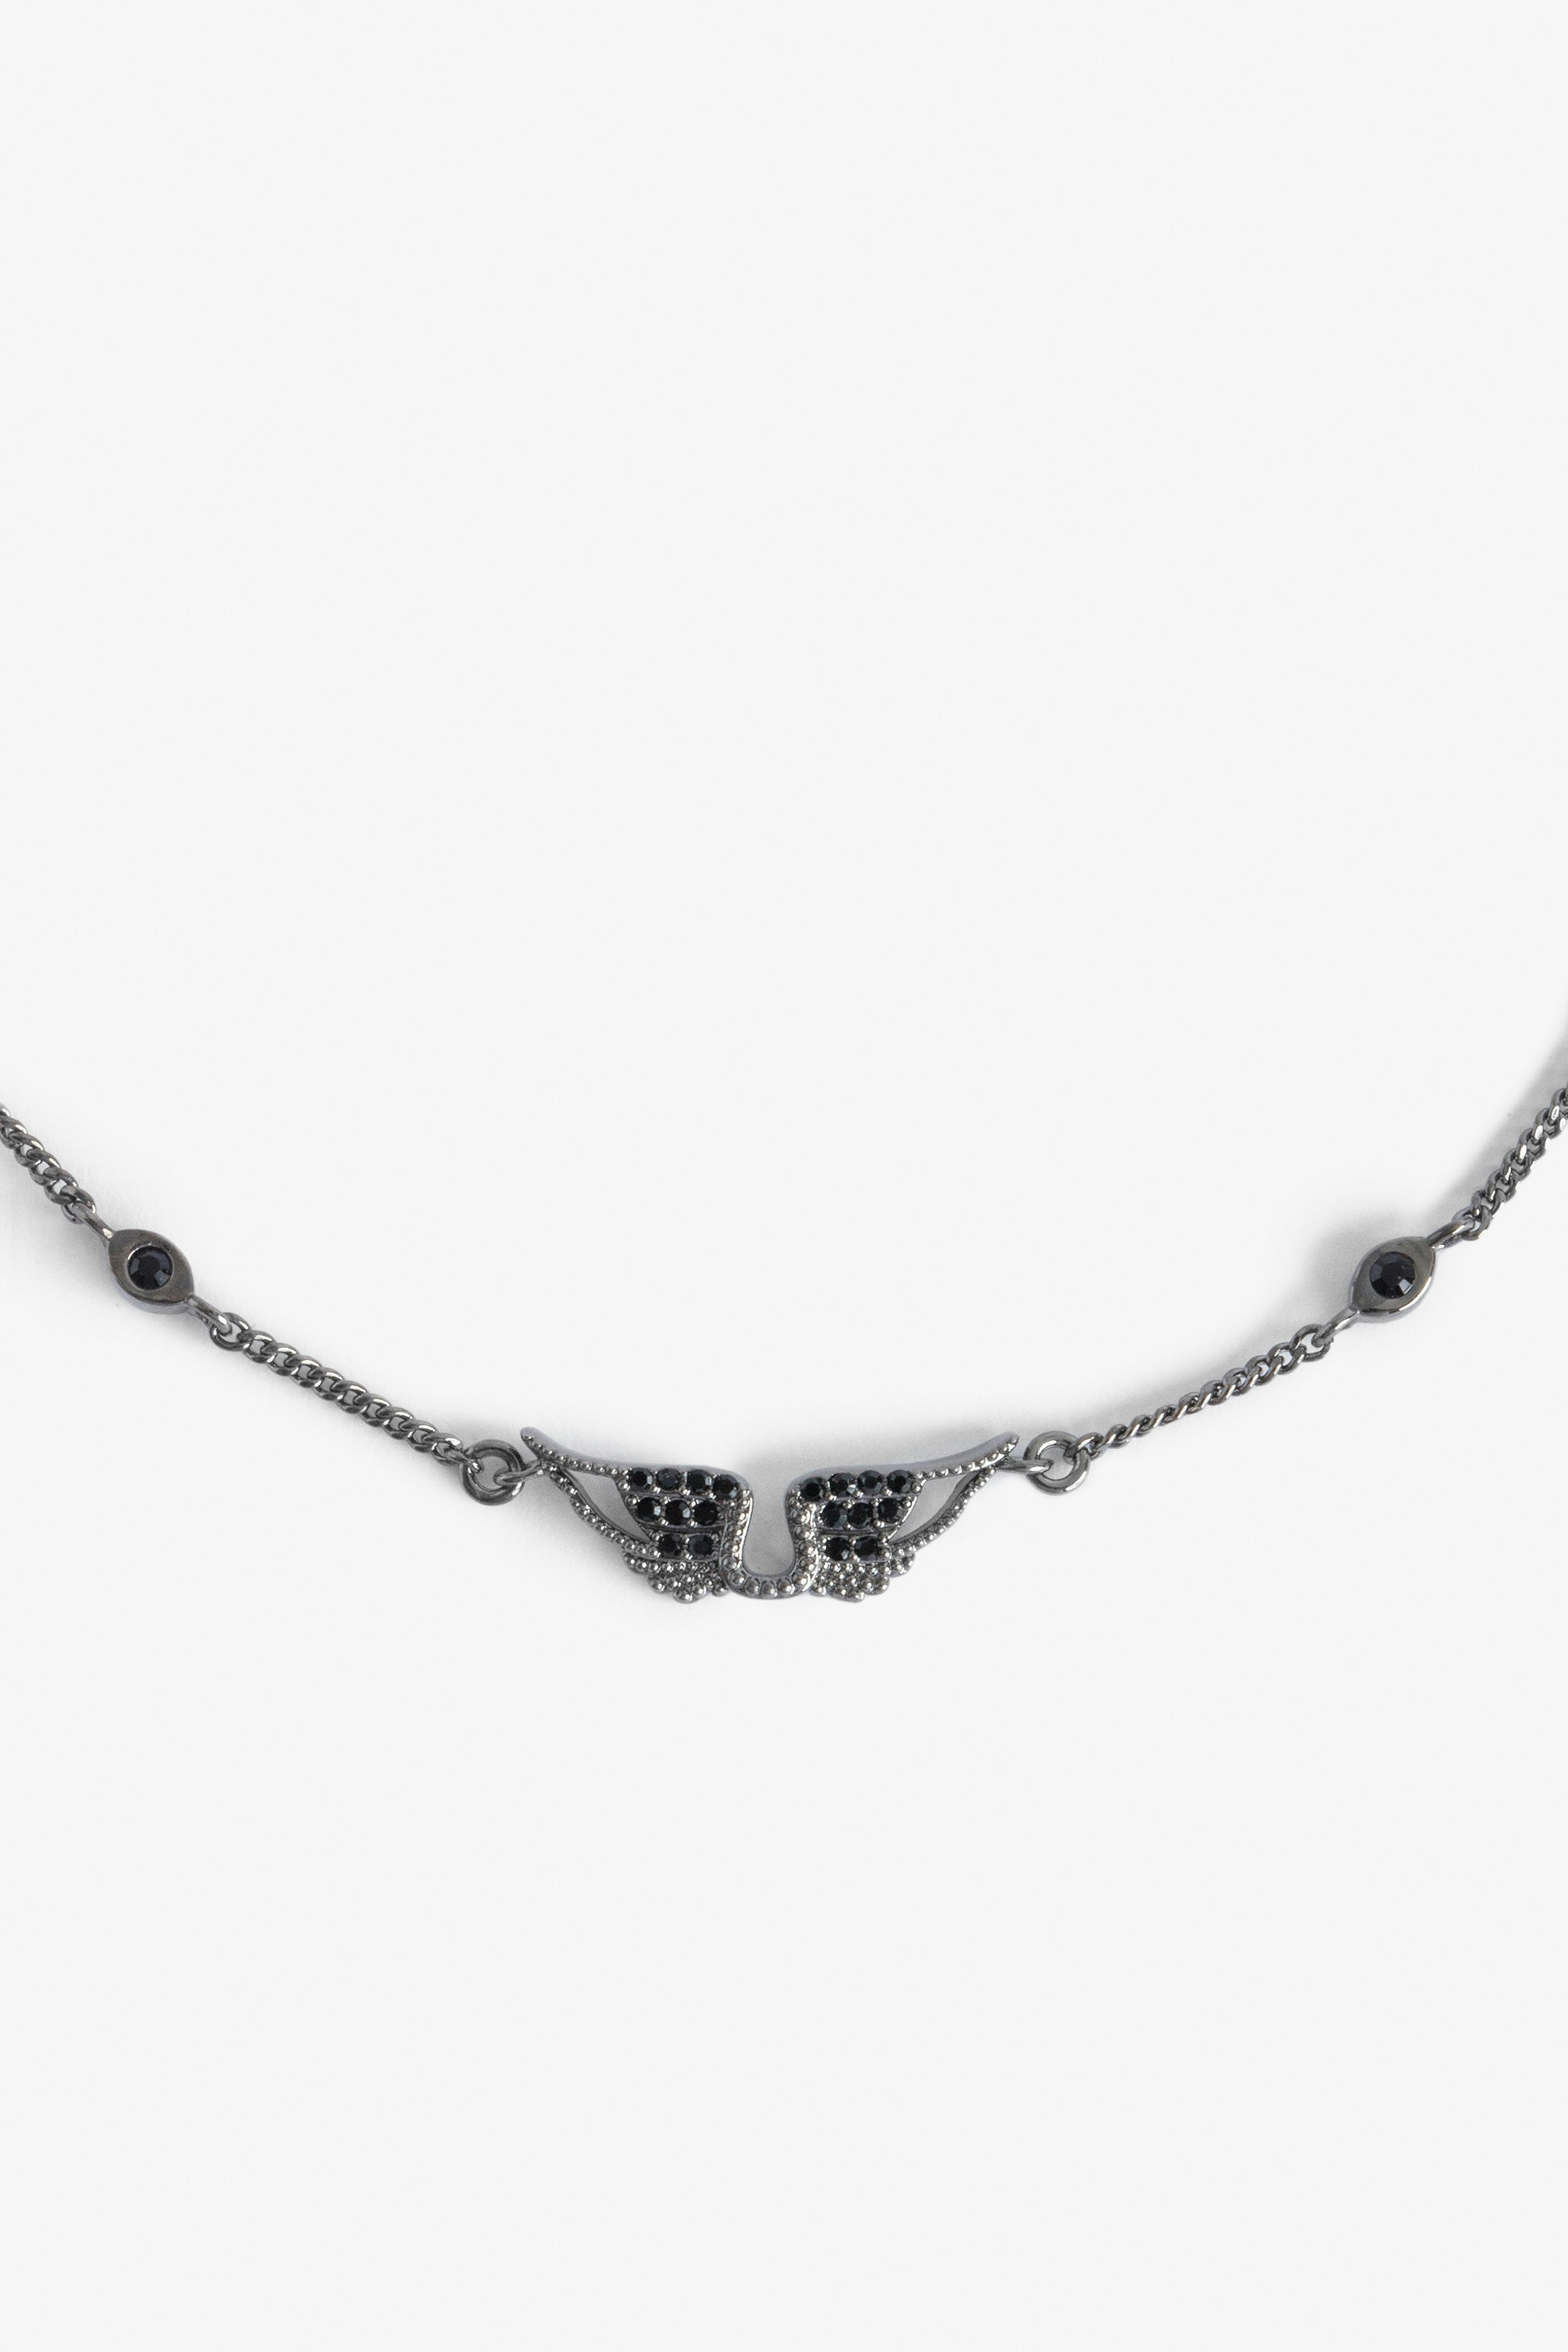 Bracelet de Cheville Rock - Bracelet de cheville en laiton, chaîne avec ailes et strass.